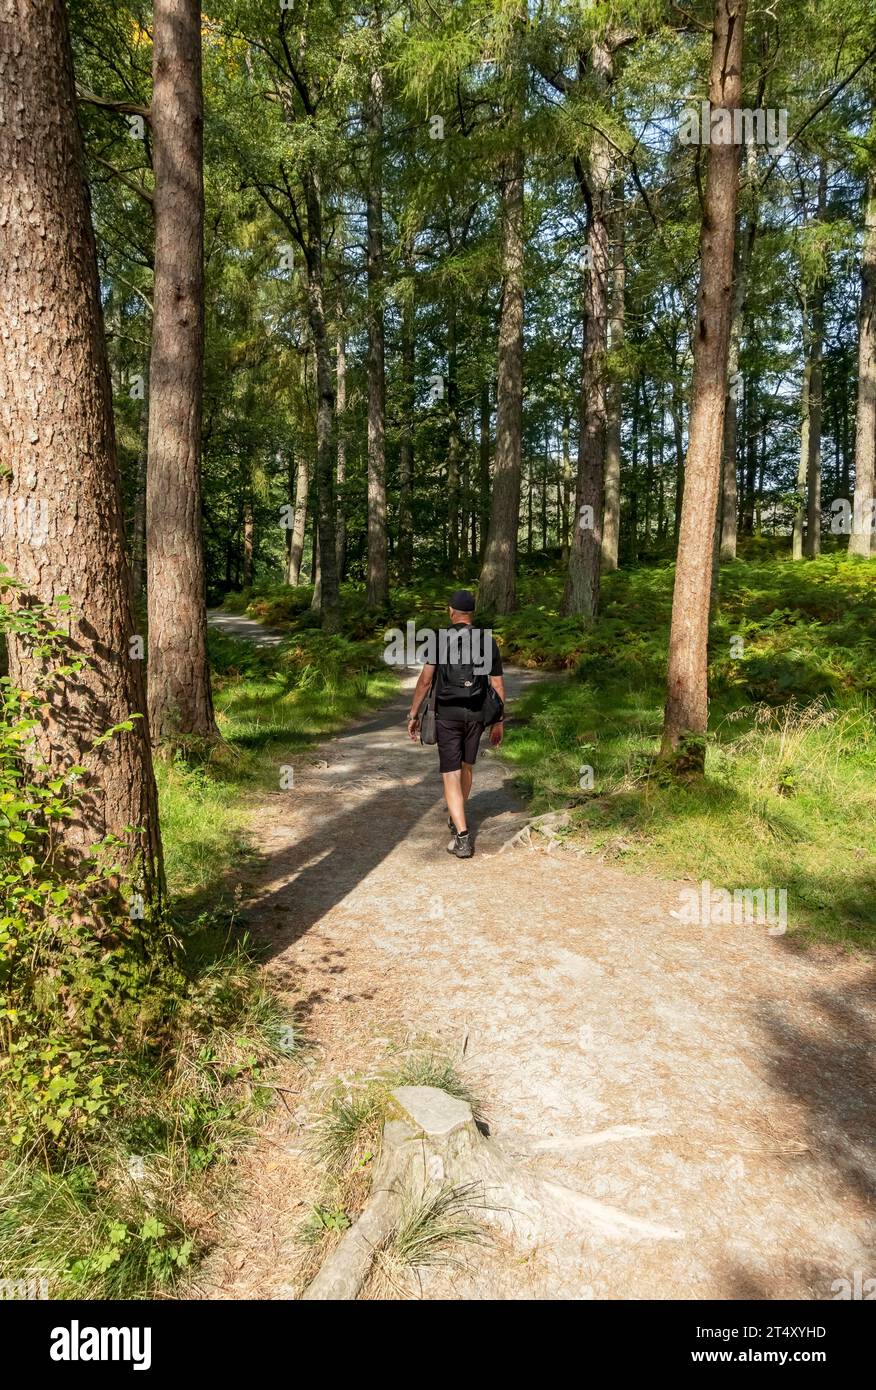 Homme personne marcheur marchant sur le sentier sentier pédestre dans la forêt de Manesty Woods près de Derwentwater en été Lake District National Park Cumbria Angleterre Royaume-Uni Banque D'Images